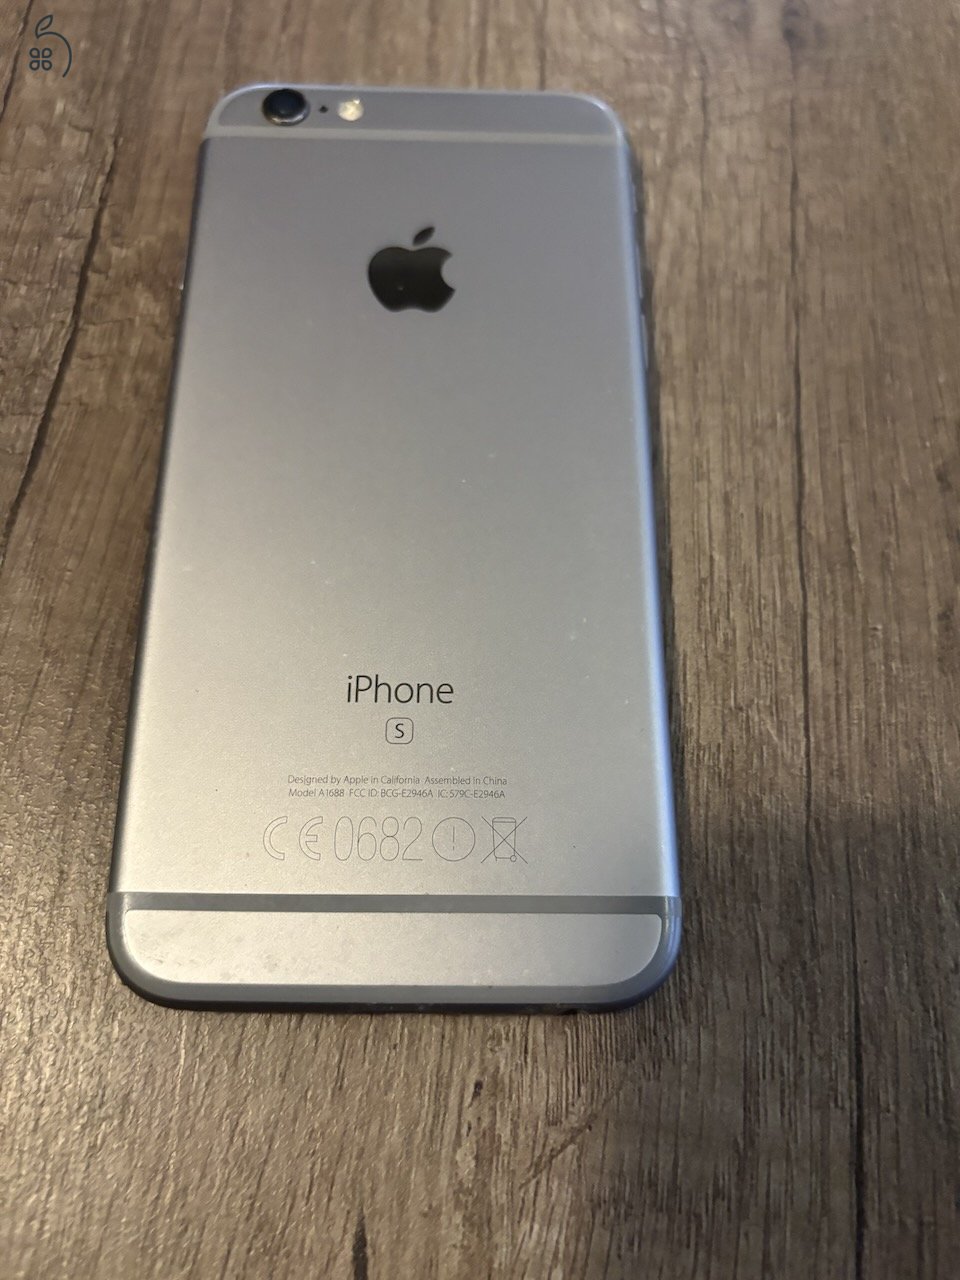 iPhone 6S space gray 64 GB, 100% akku